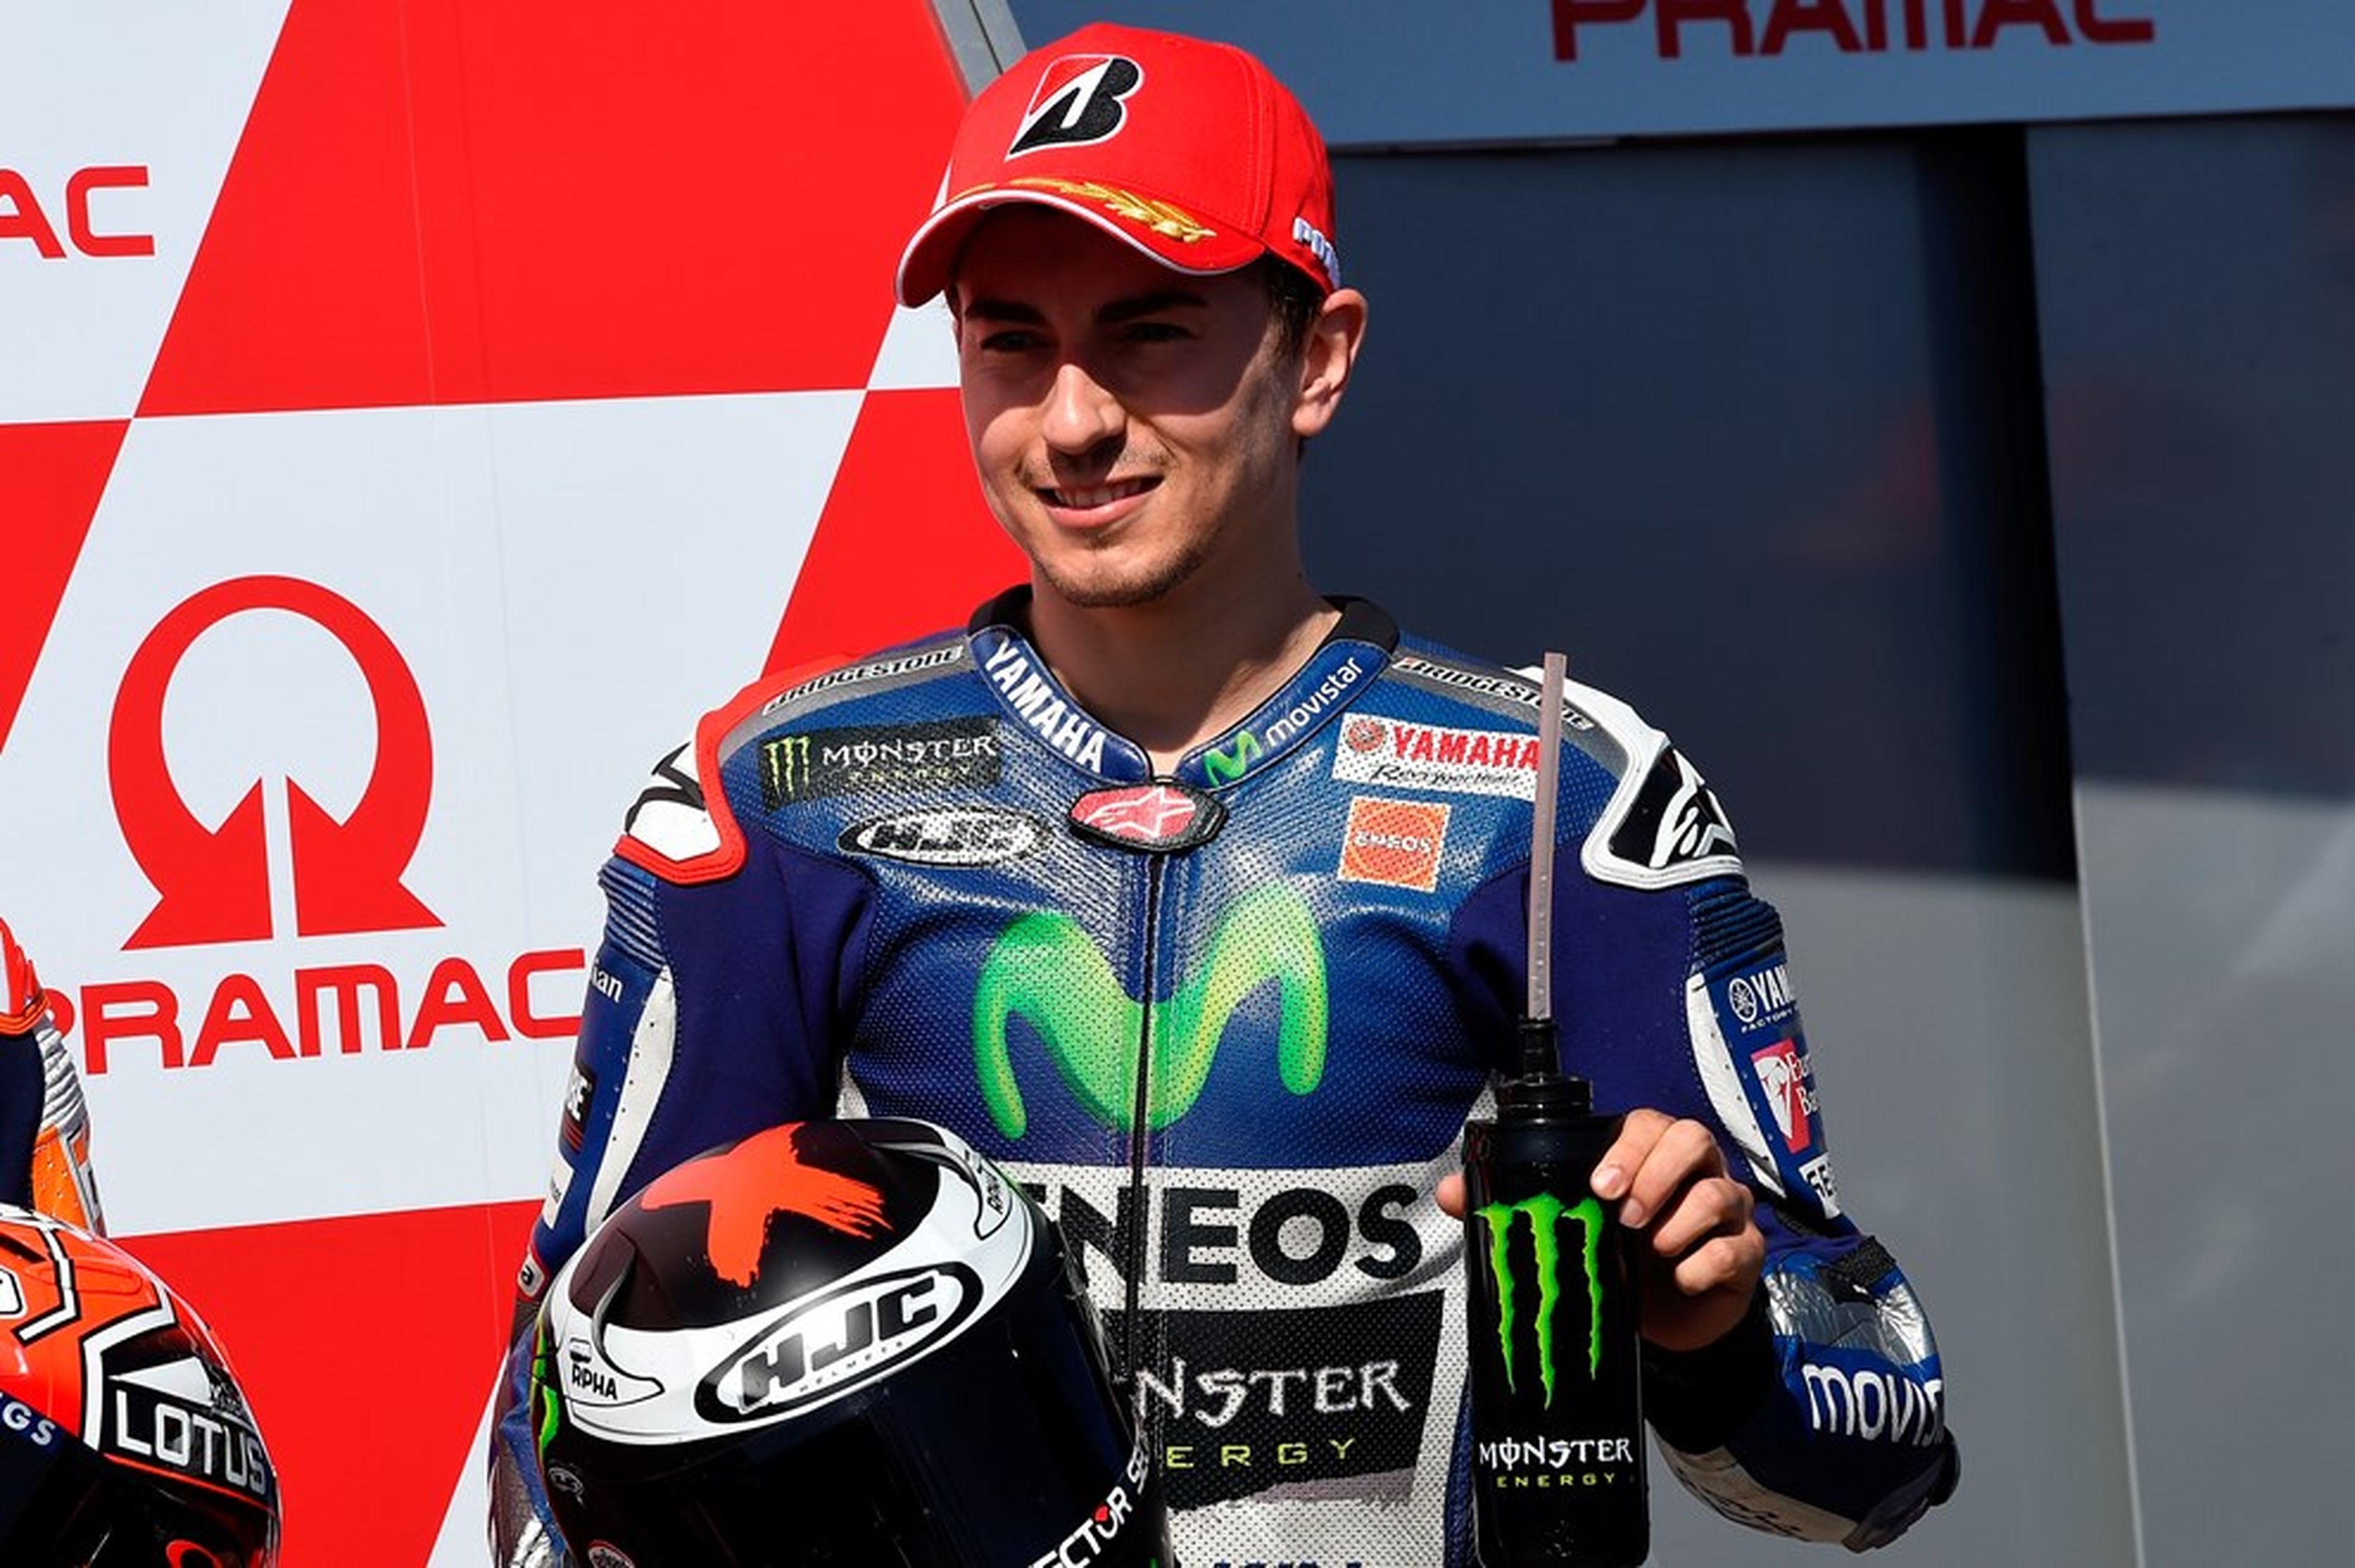 Lorenzo: "Hoy mucha gente le ha perdido el respeto a Rossi"